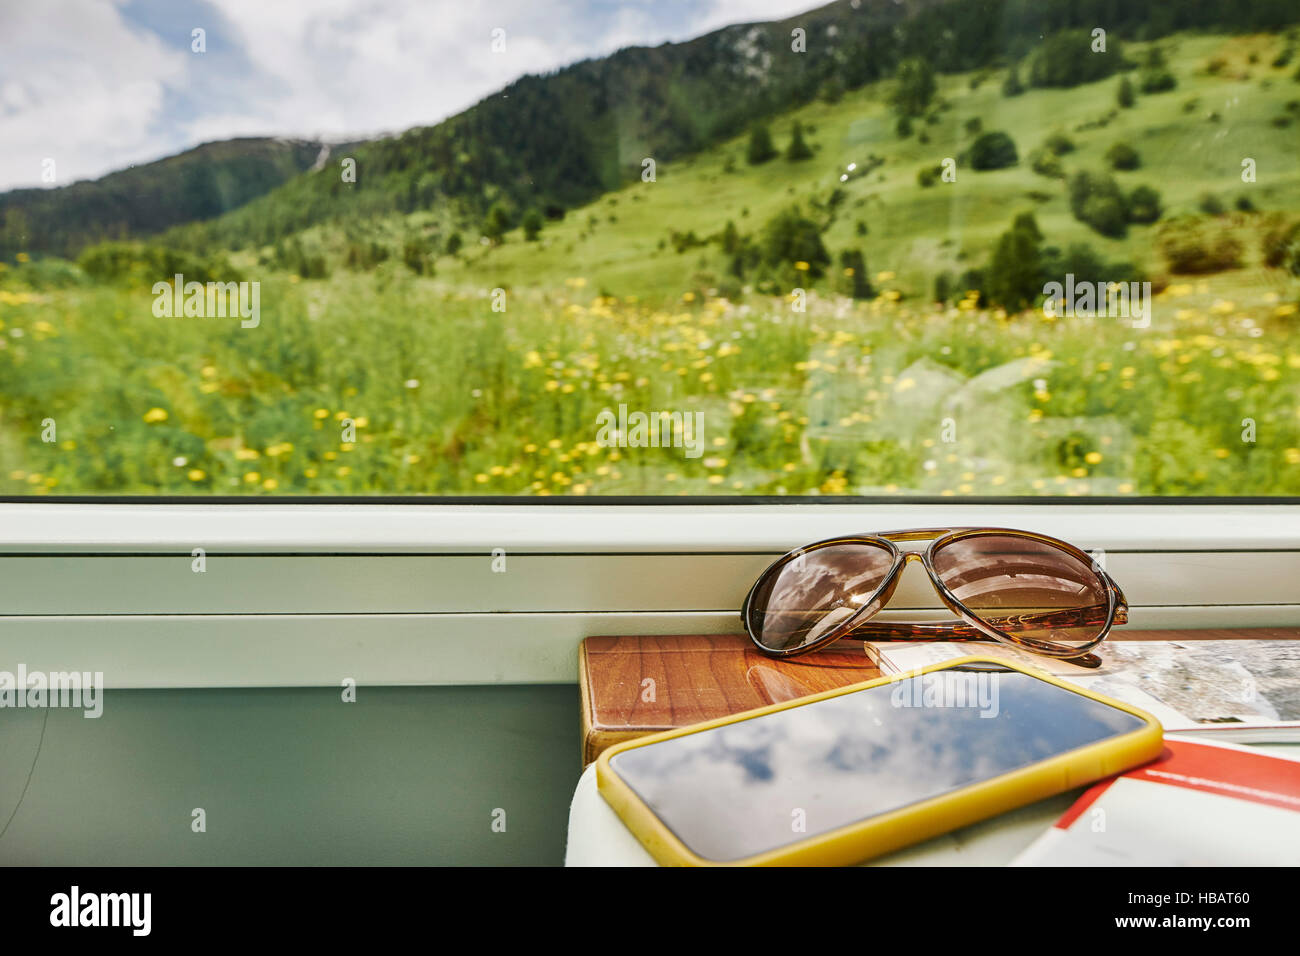 Sunglasses and smartphone by passenger train window, Chur, Switzerland Stock Photo